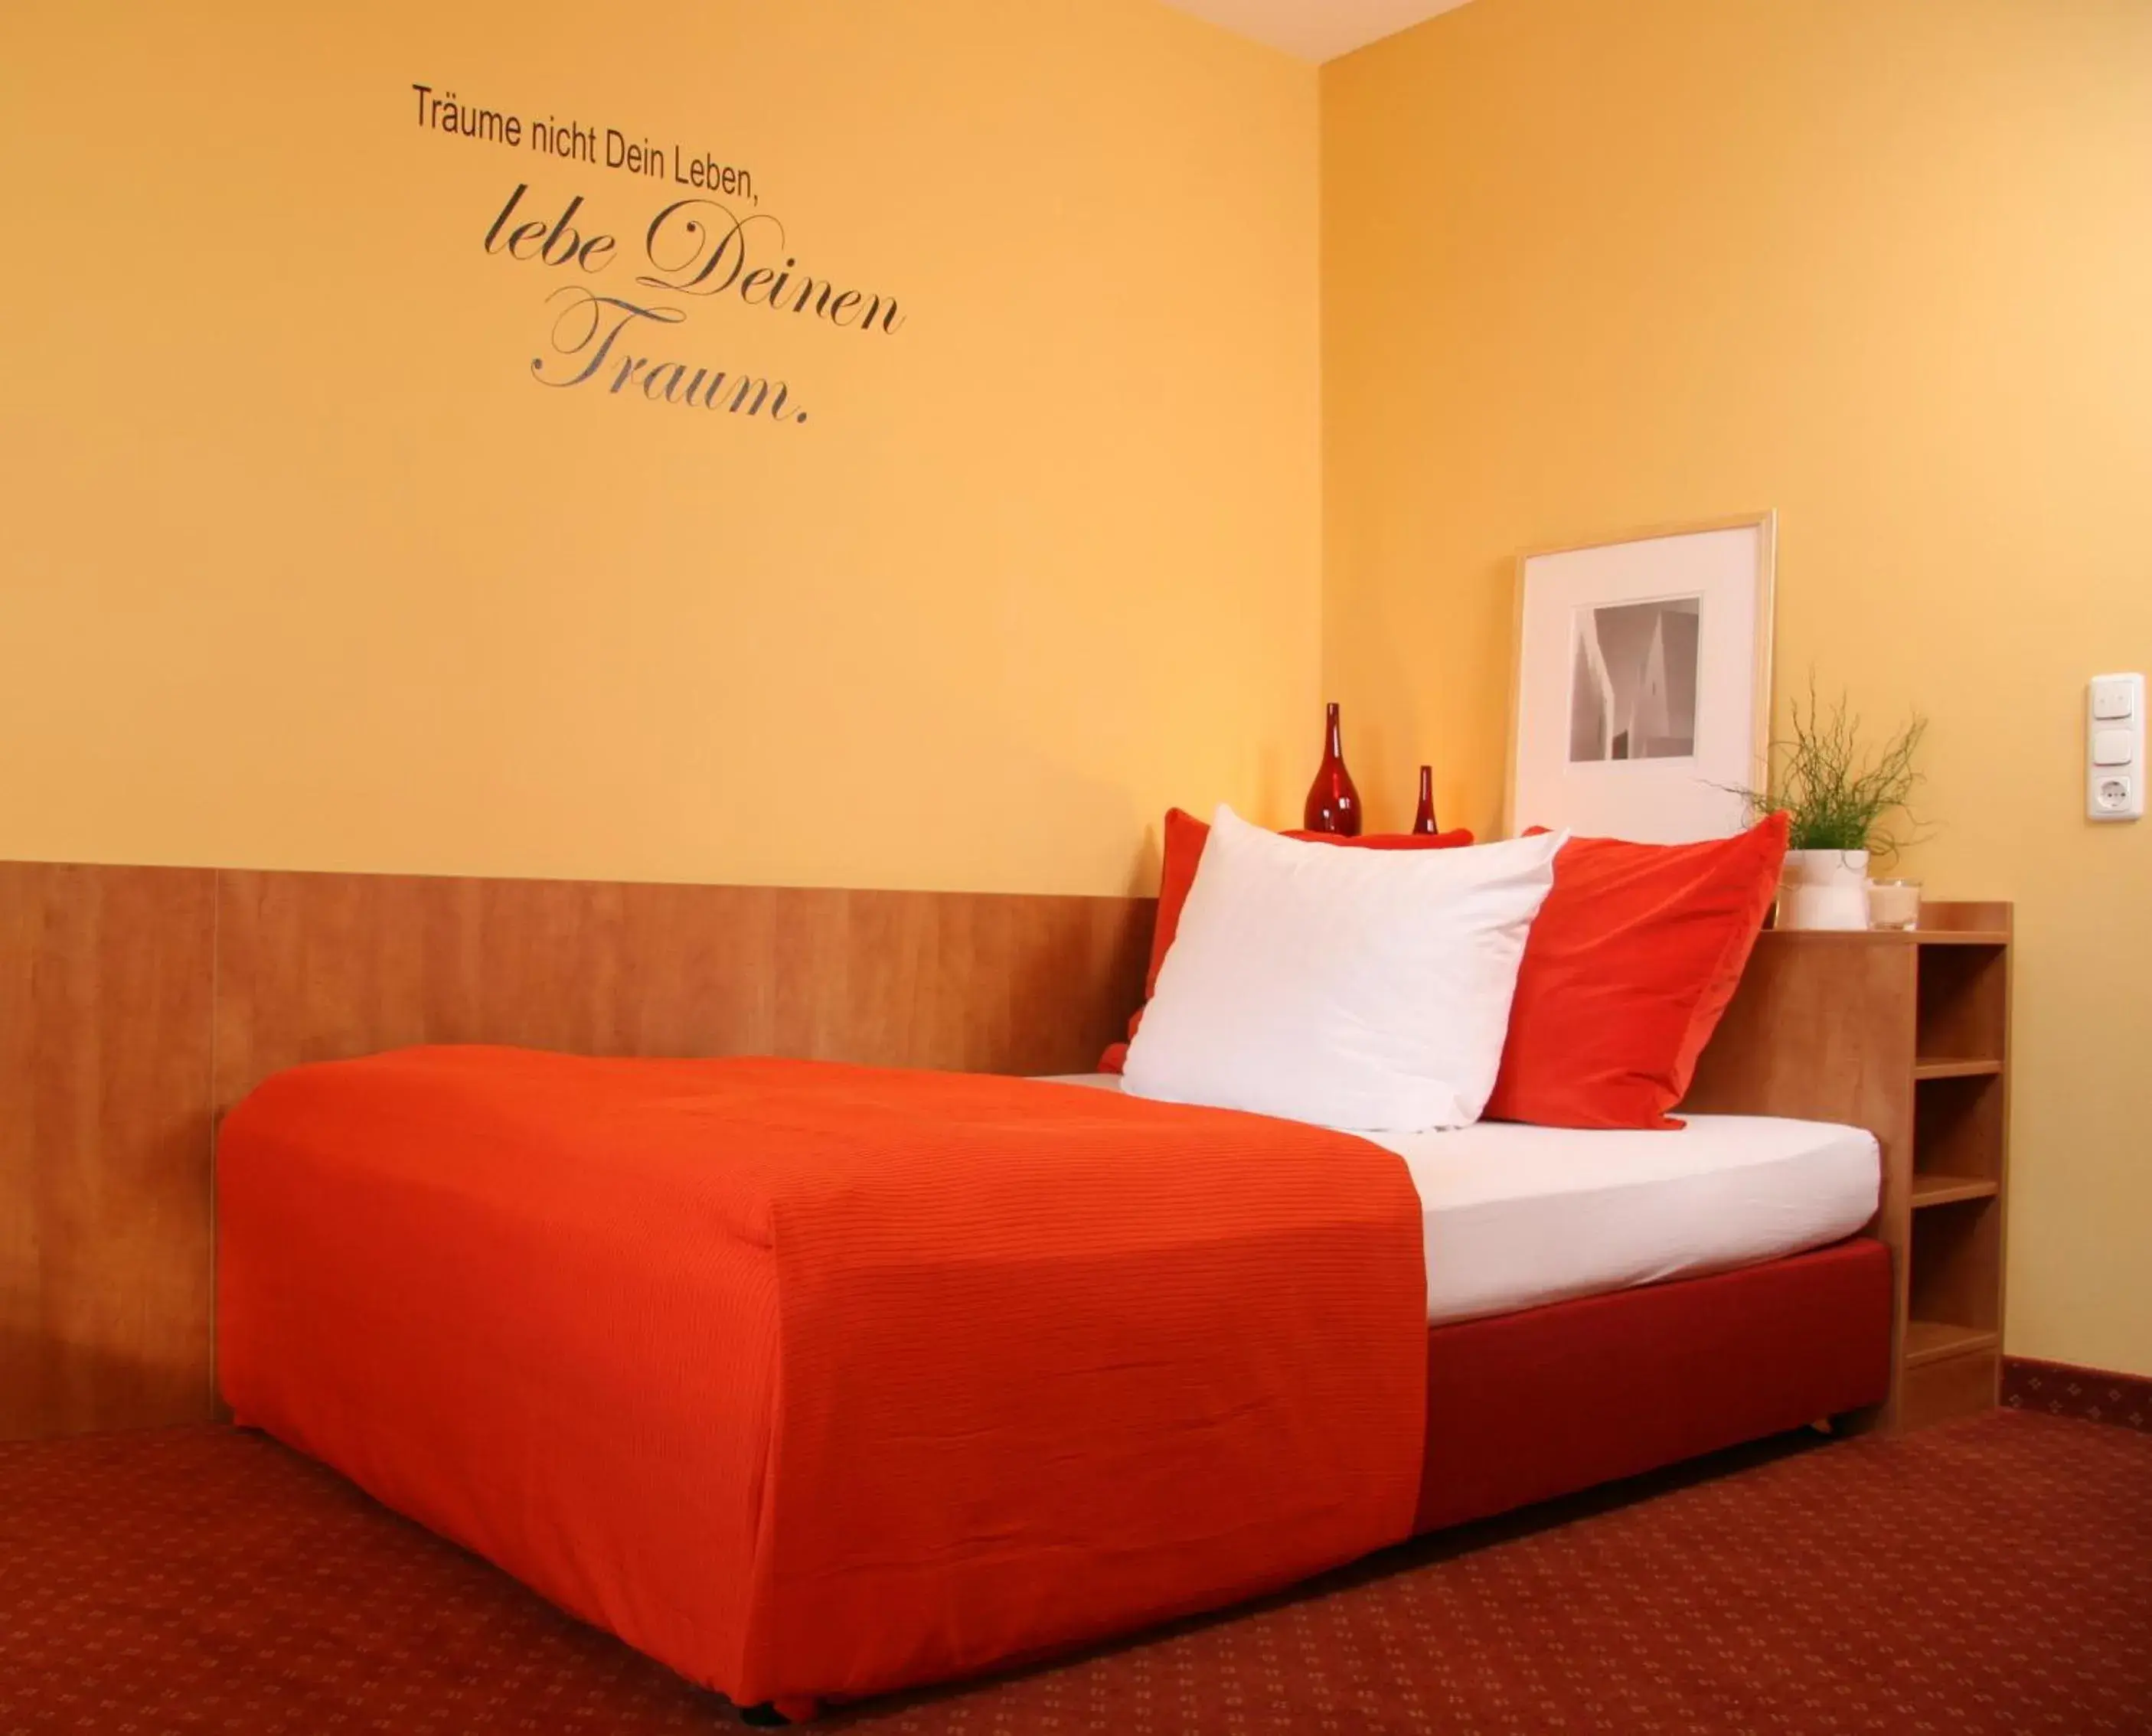 Bed in Hotel von Heyden